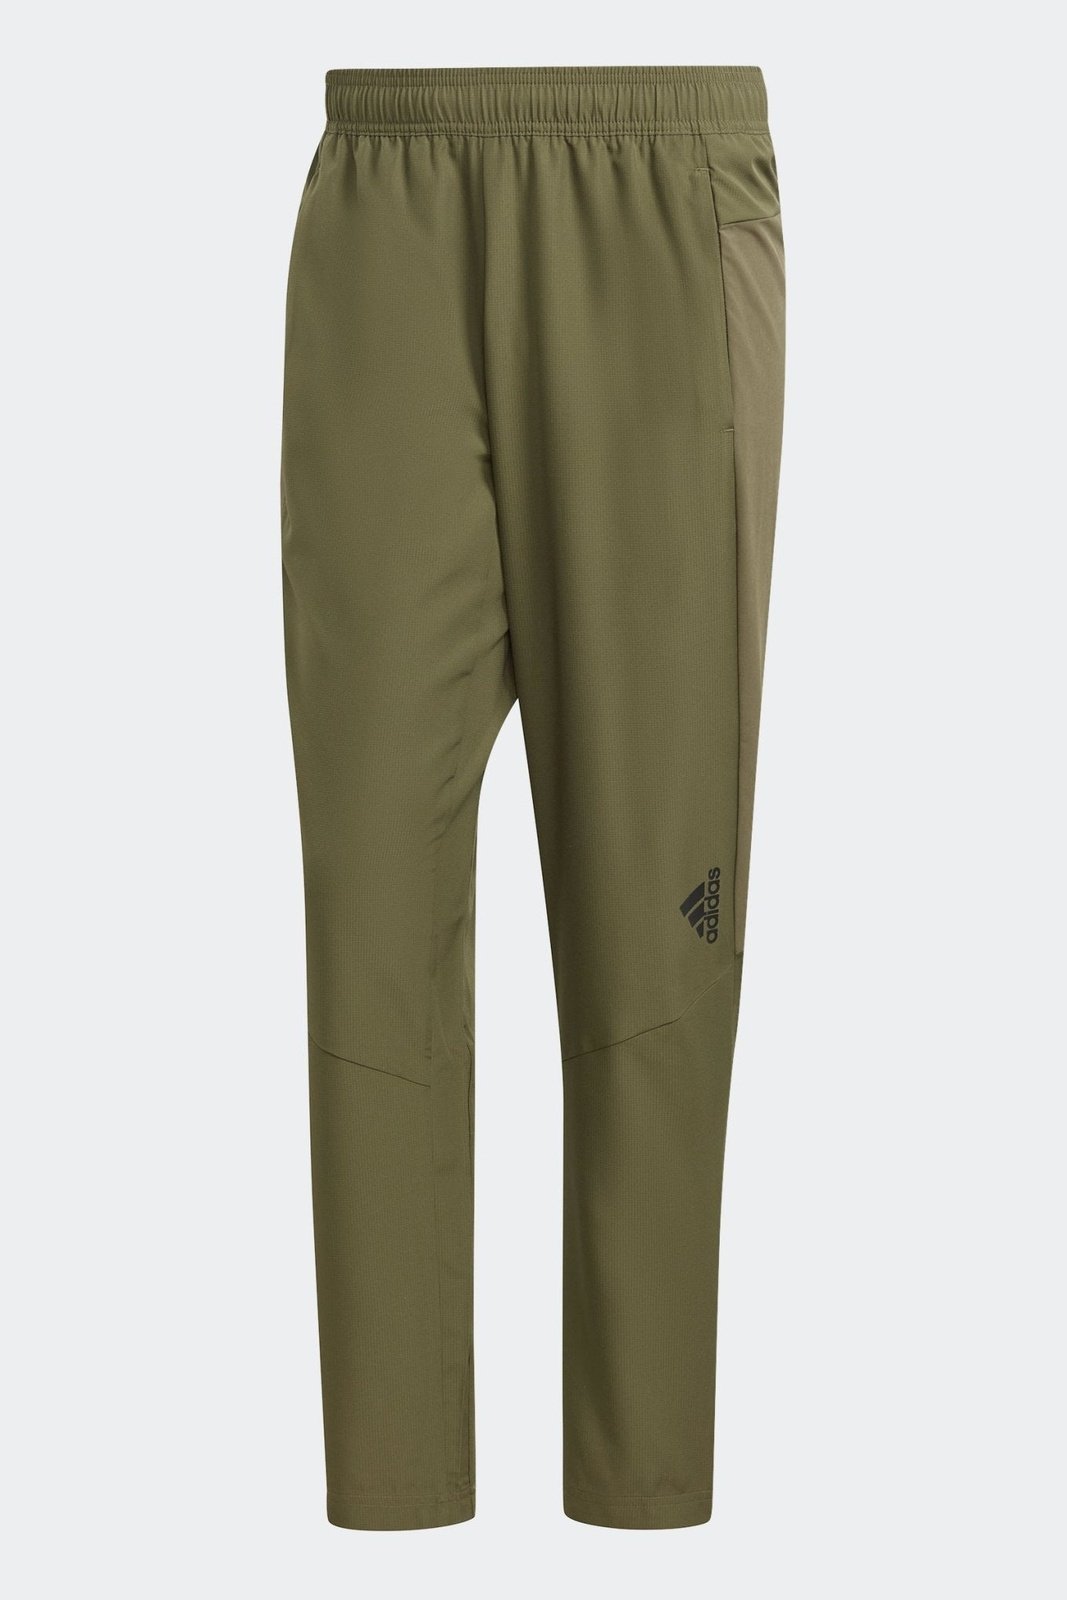 ADIDAS - מכנסיים ארוכים לגברים AEROREADY DESIGNED FOR MOVEMENT בצבע ירוק זית - MASHBIR//365